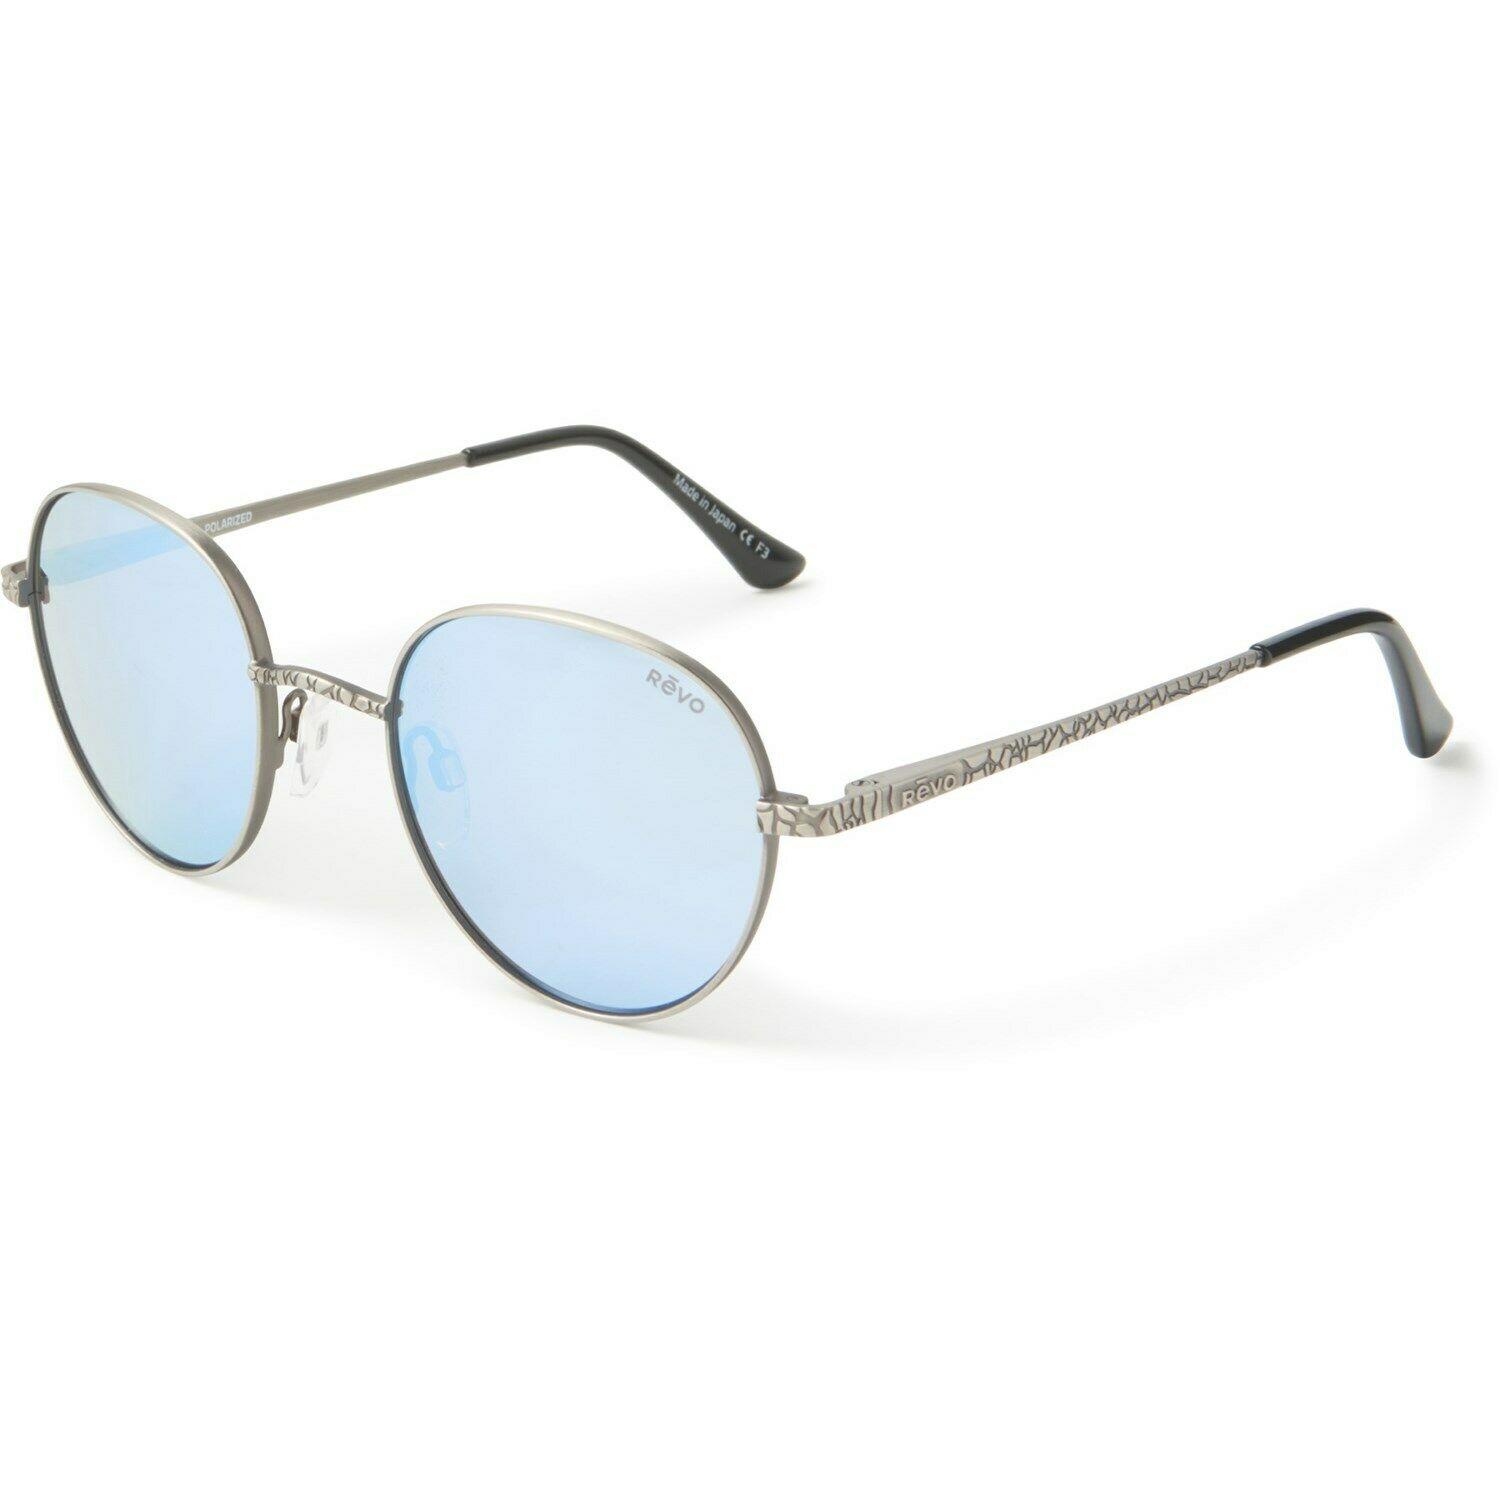 Revo Python II Sunglasses - Polarized Glass Lenses For Men